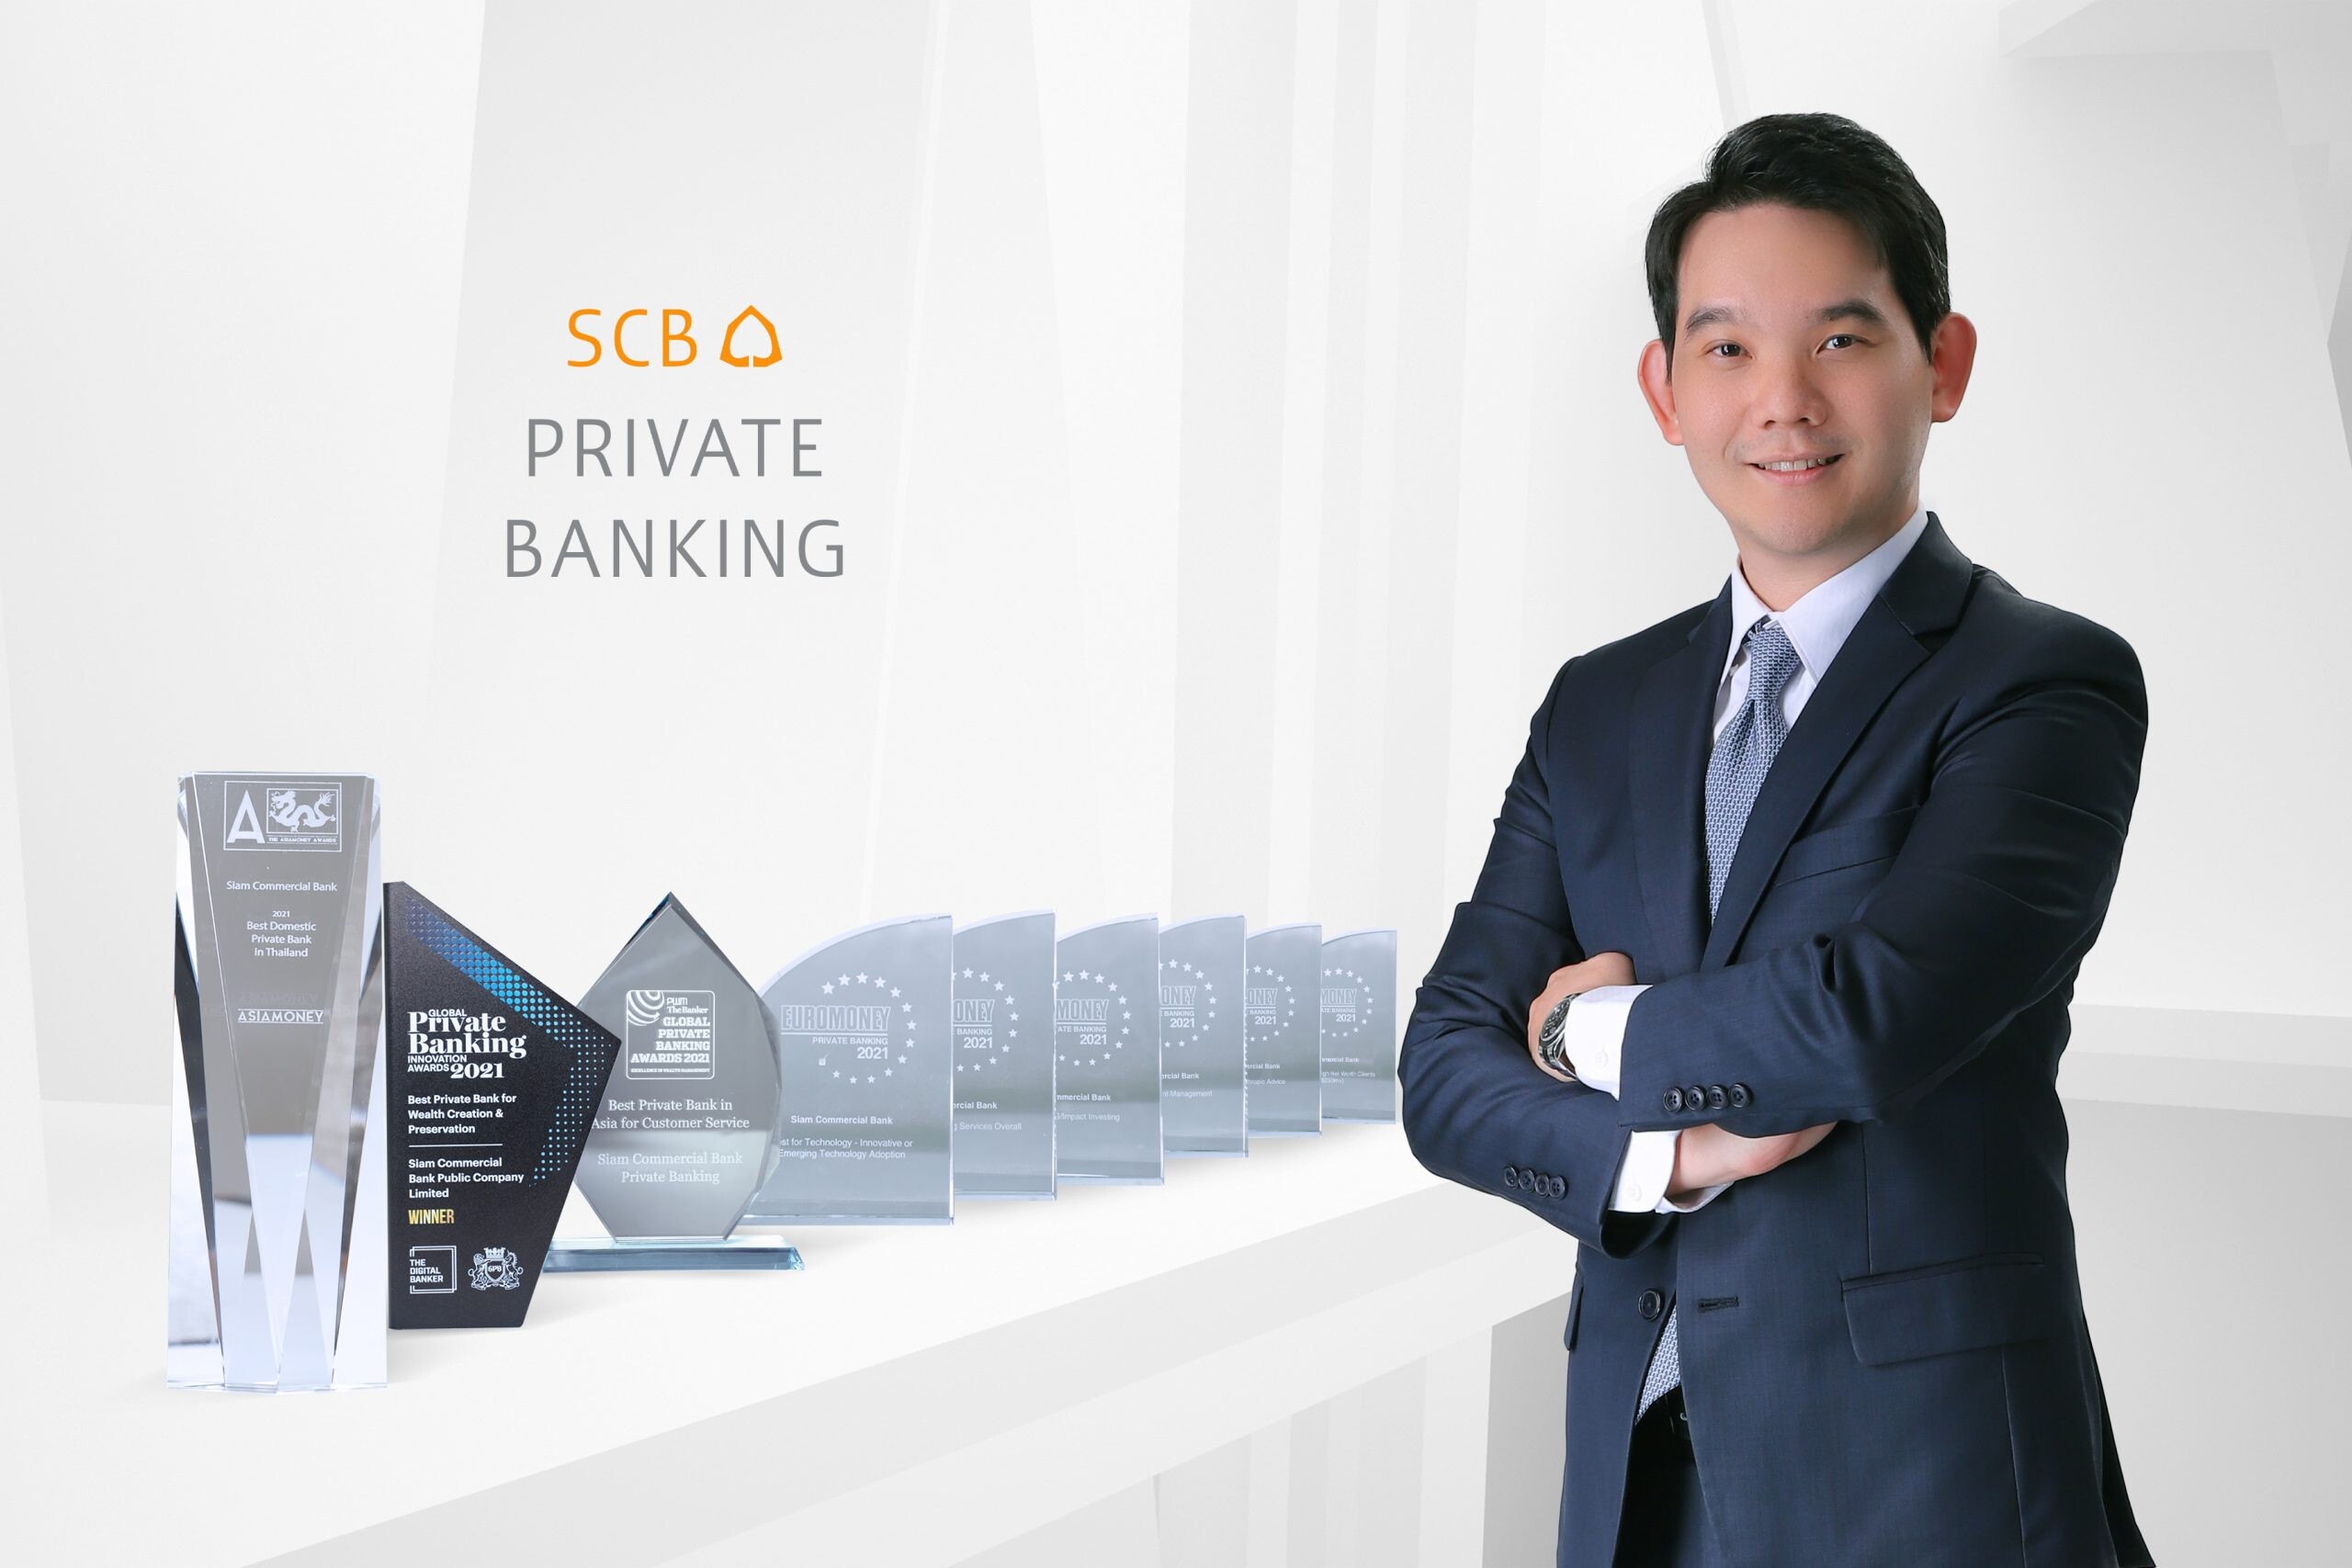 SCB PRIVATE BANKING คว้ารางวัล "ไพรเวทแบงก์กิ้งยอดเยี่ยมที่สุดในประเทศไทย" พร้อมกวาดอีก 8 รางวัลใหญ่จากเวทีระดับโลก ตอกย้ำความมุ่งมั่นและเชี่ยวชาญทุกโซลูชั่นด้านการลงทุน